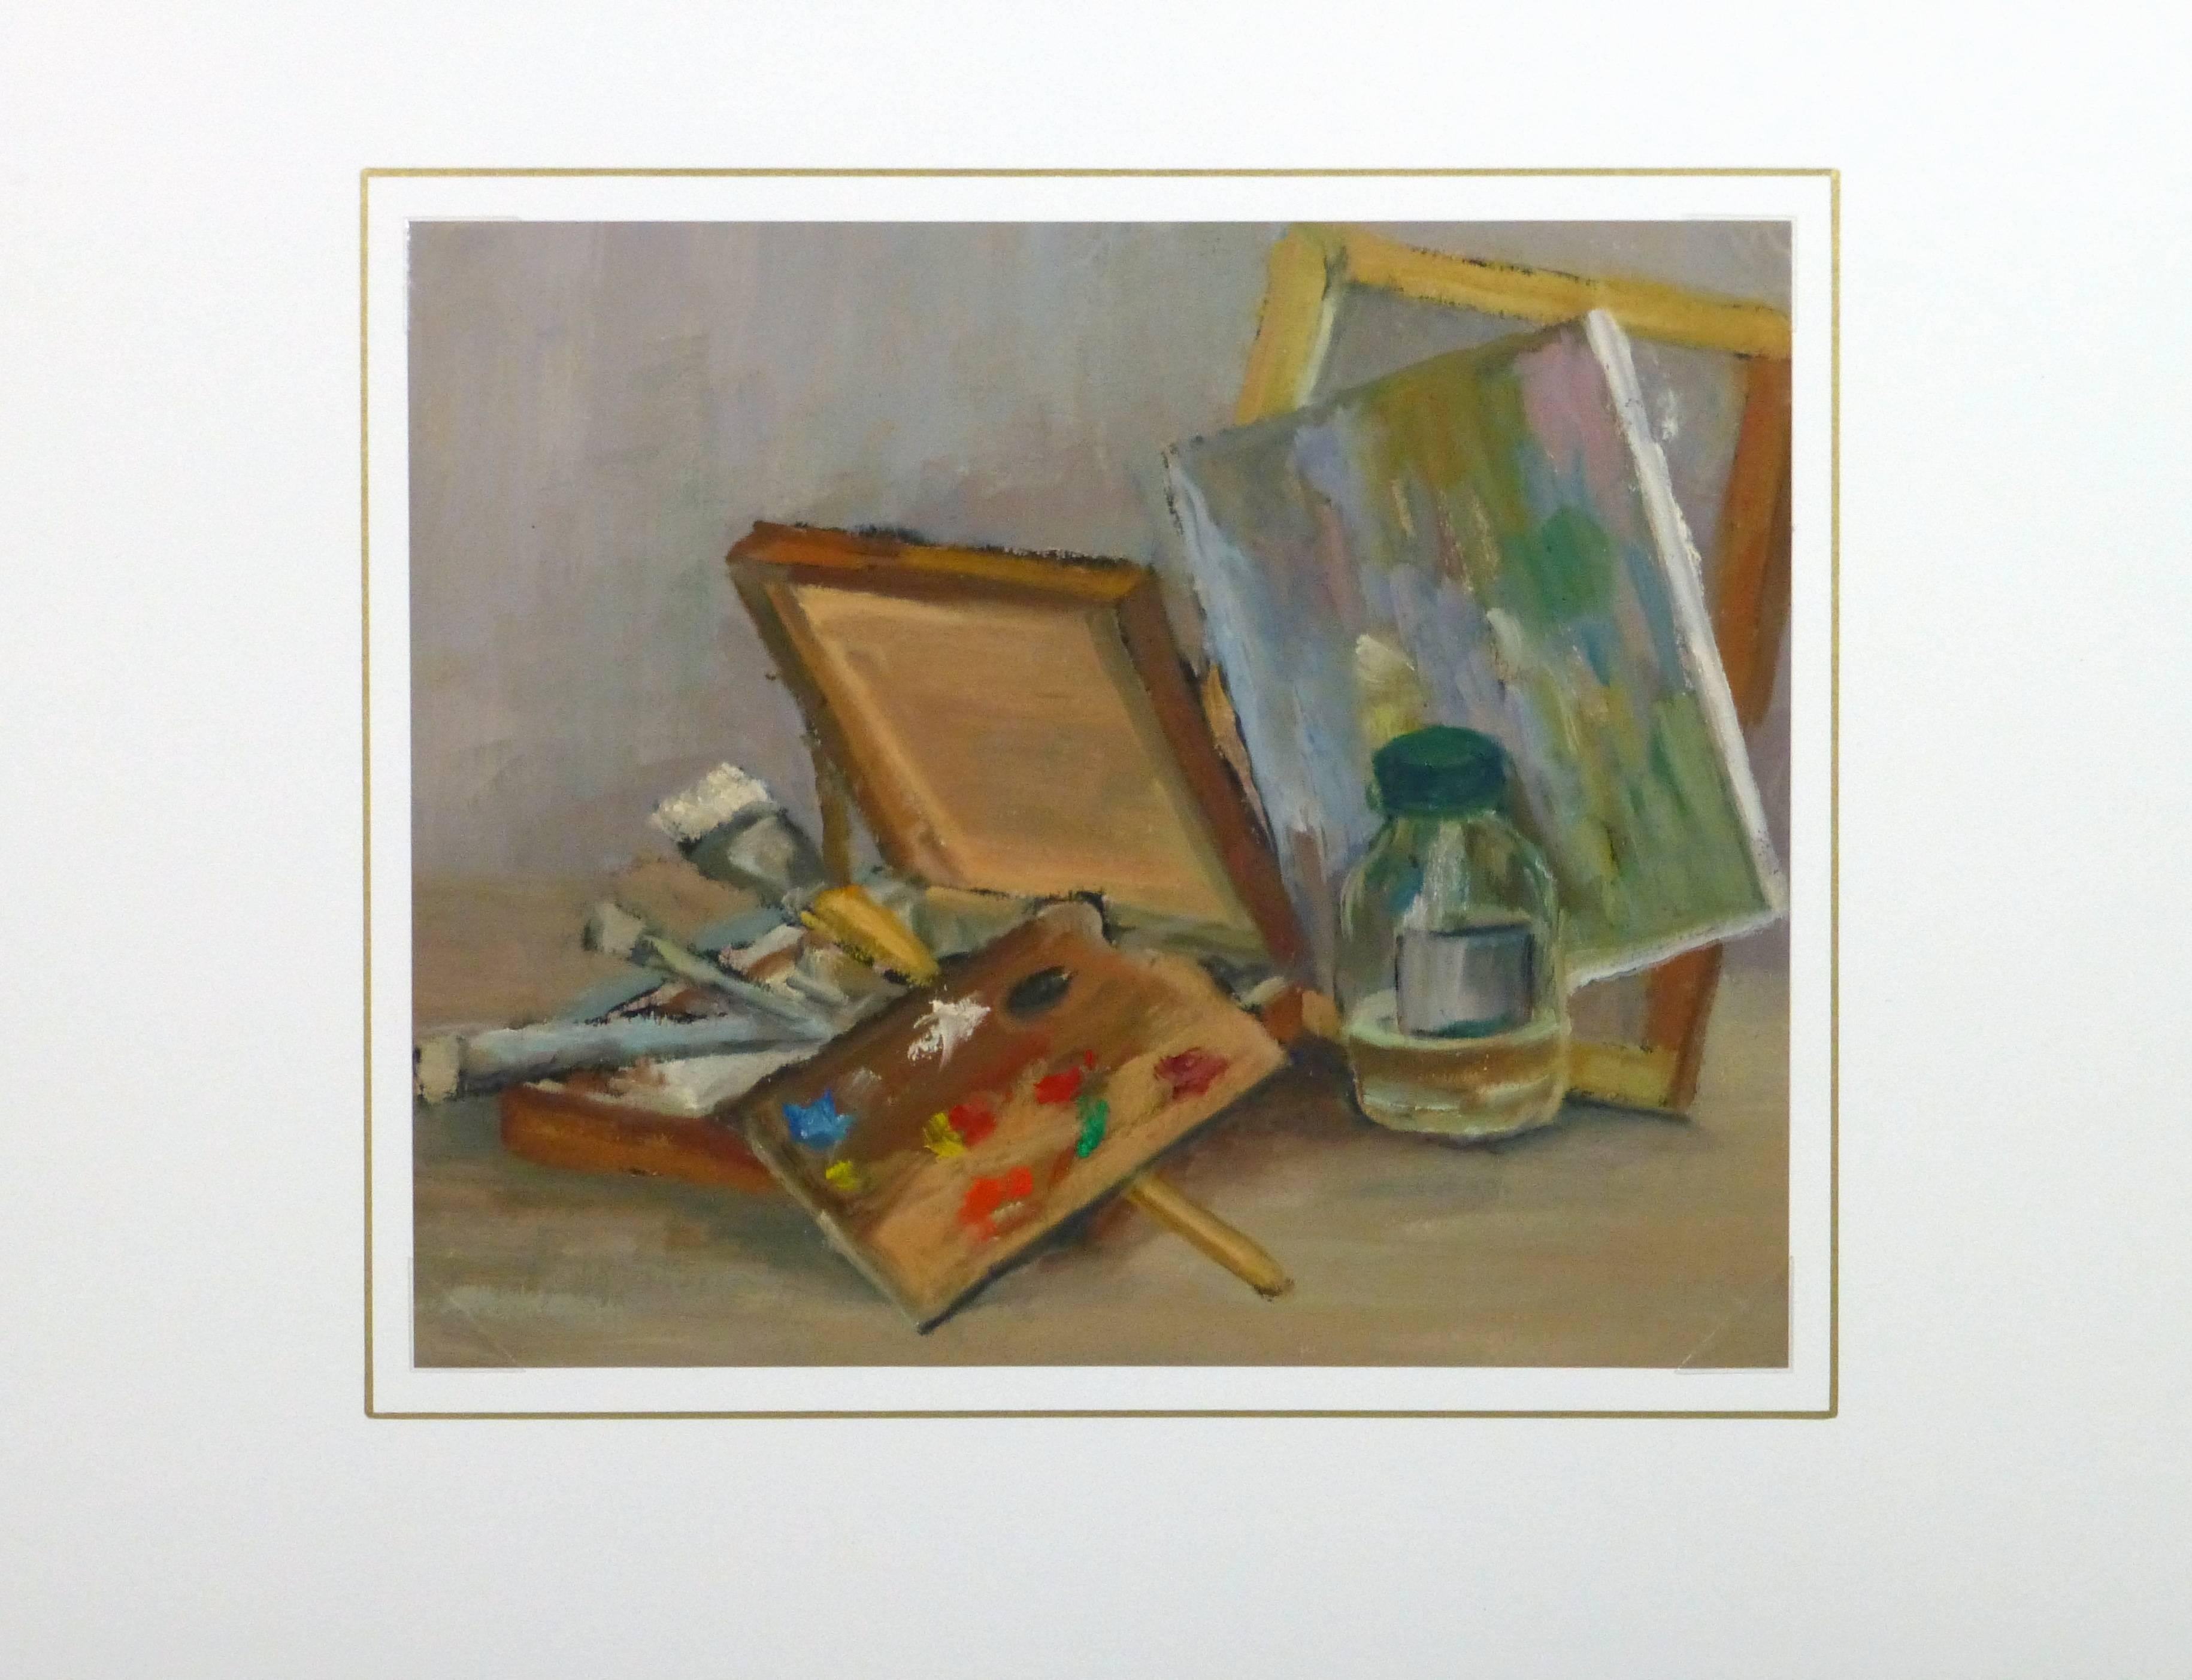 Außergewöhnliches Stillleben in Öl auf Papier mit einer Malerpalette und Zubehör des französischen Künstlers Raymond Bailly, 1967.

Einzigartiges Originalkunstwerk auf Papier, das auf einer weißen Matte mit Goldrand präsentiert wird. Die Matte